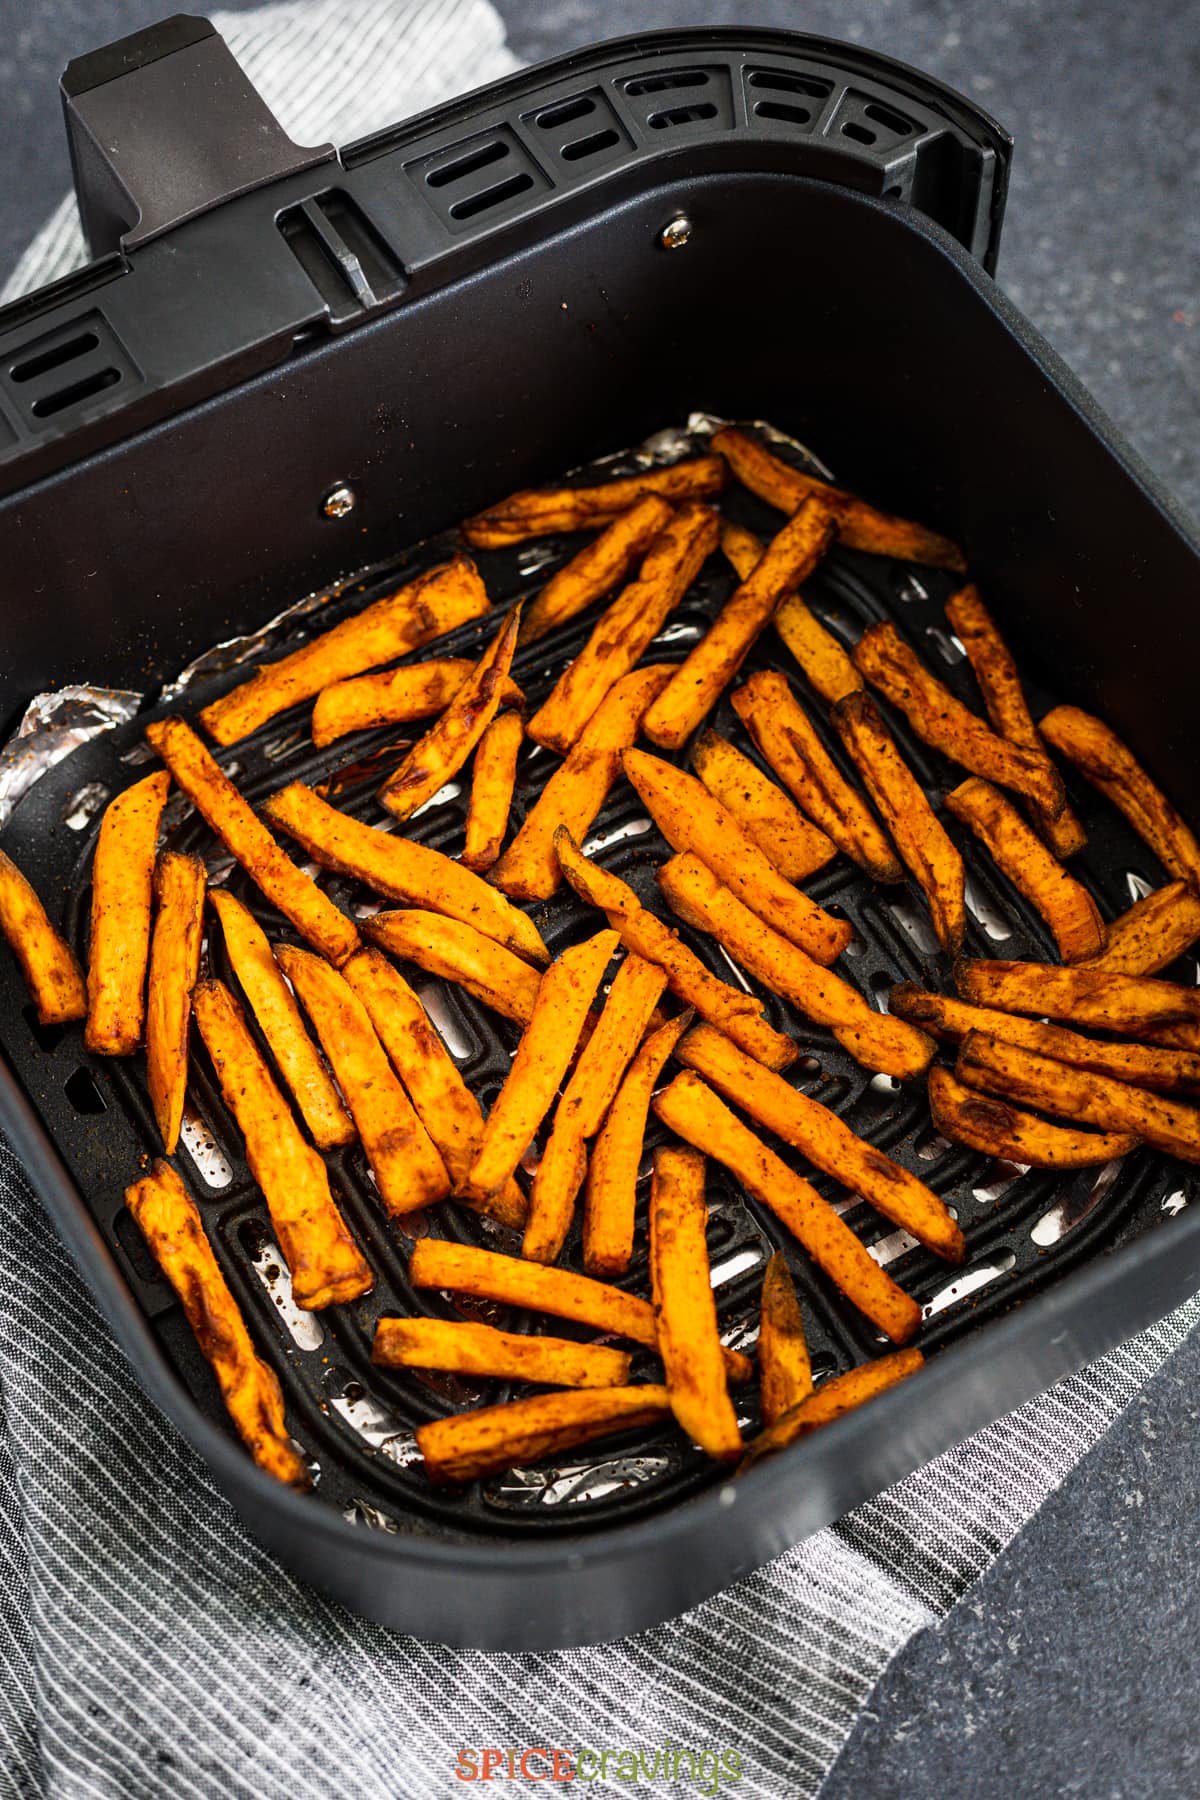 Fries inside an air fryer basket